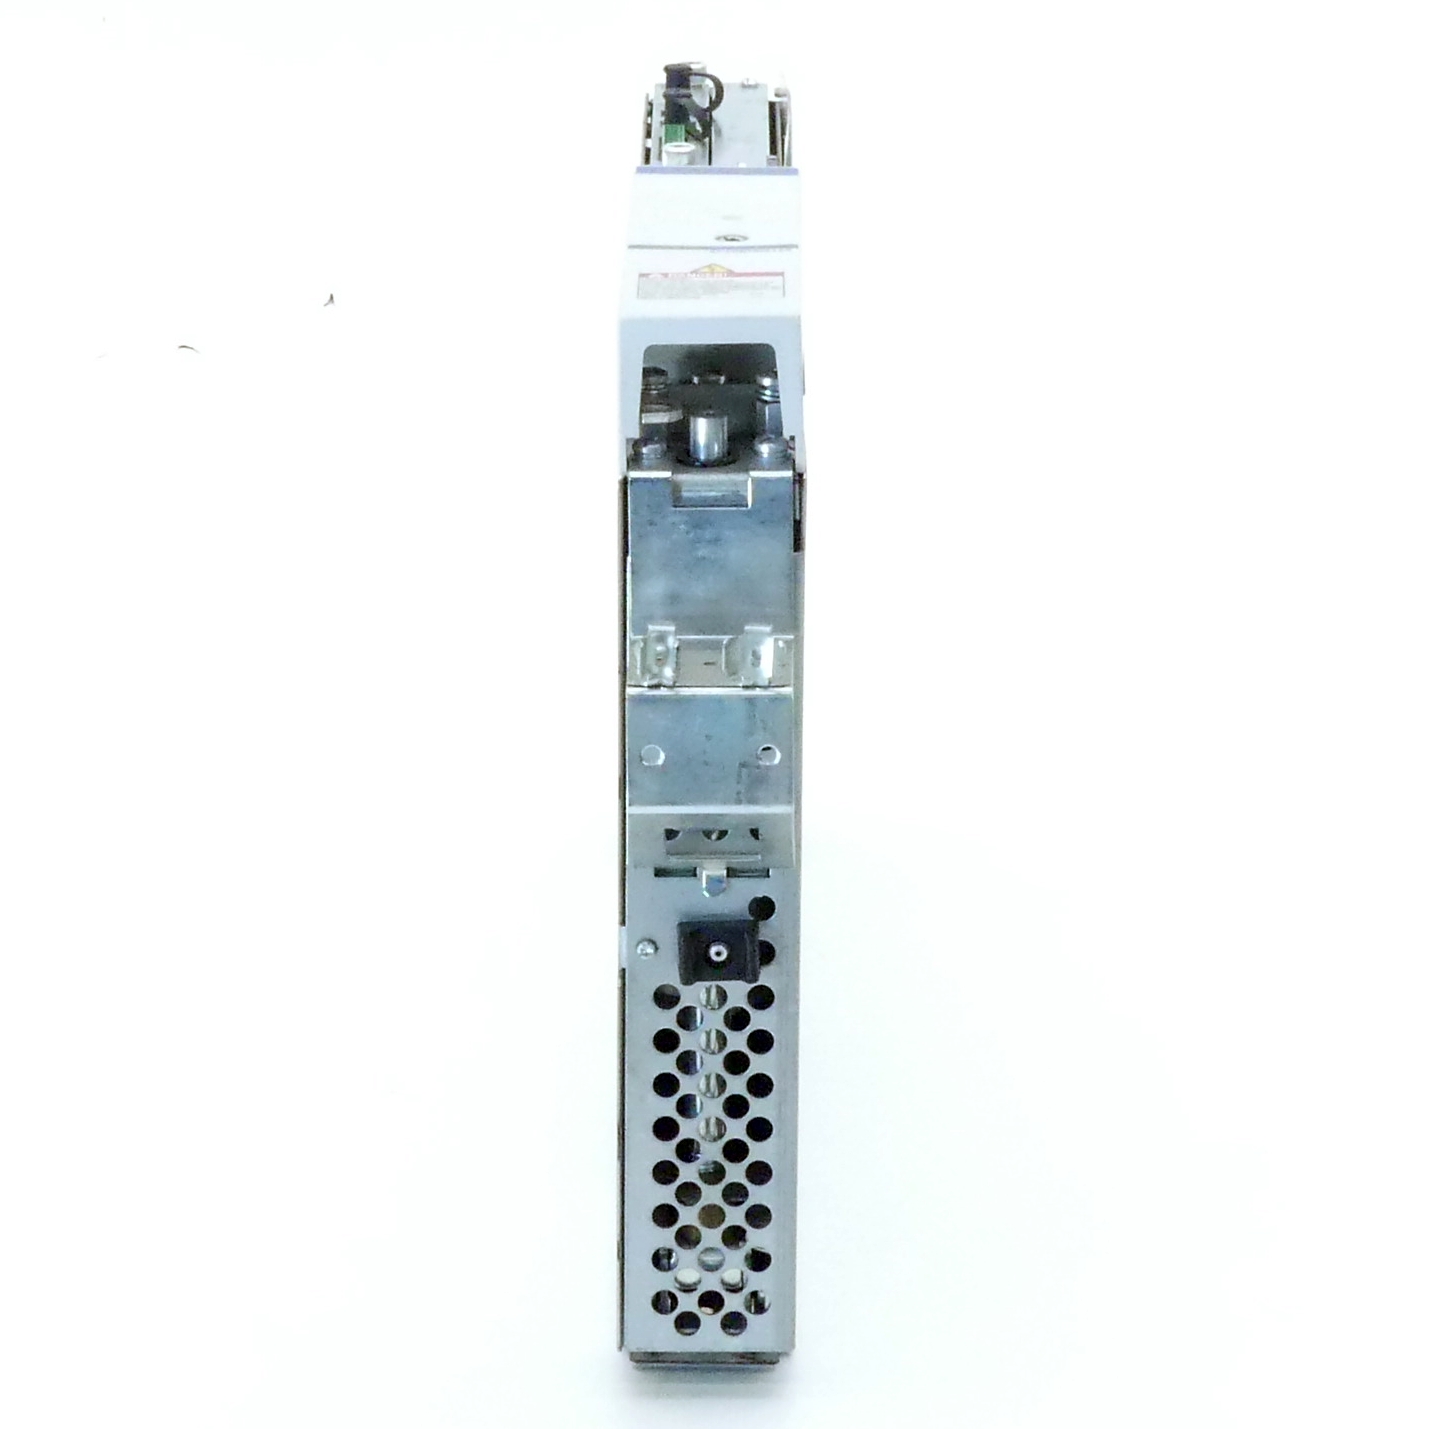 AC-Controller HDS02.2-W040N-HS12-01-FW 